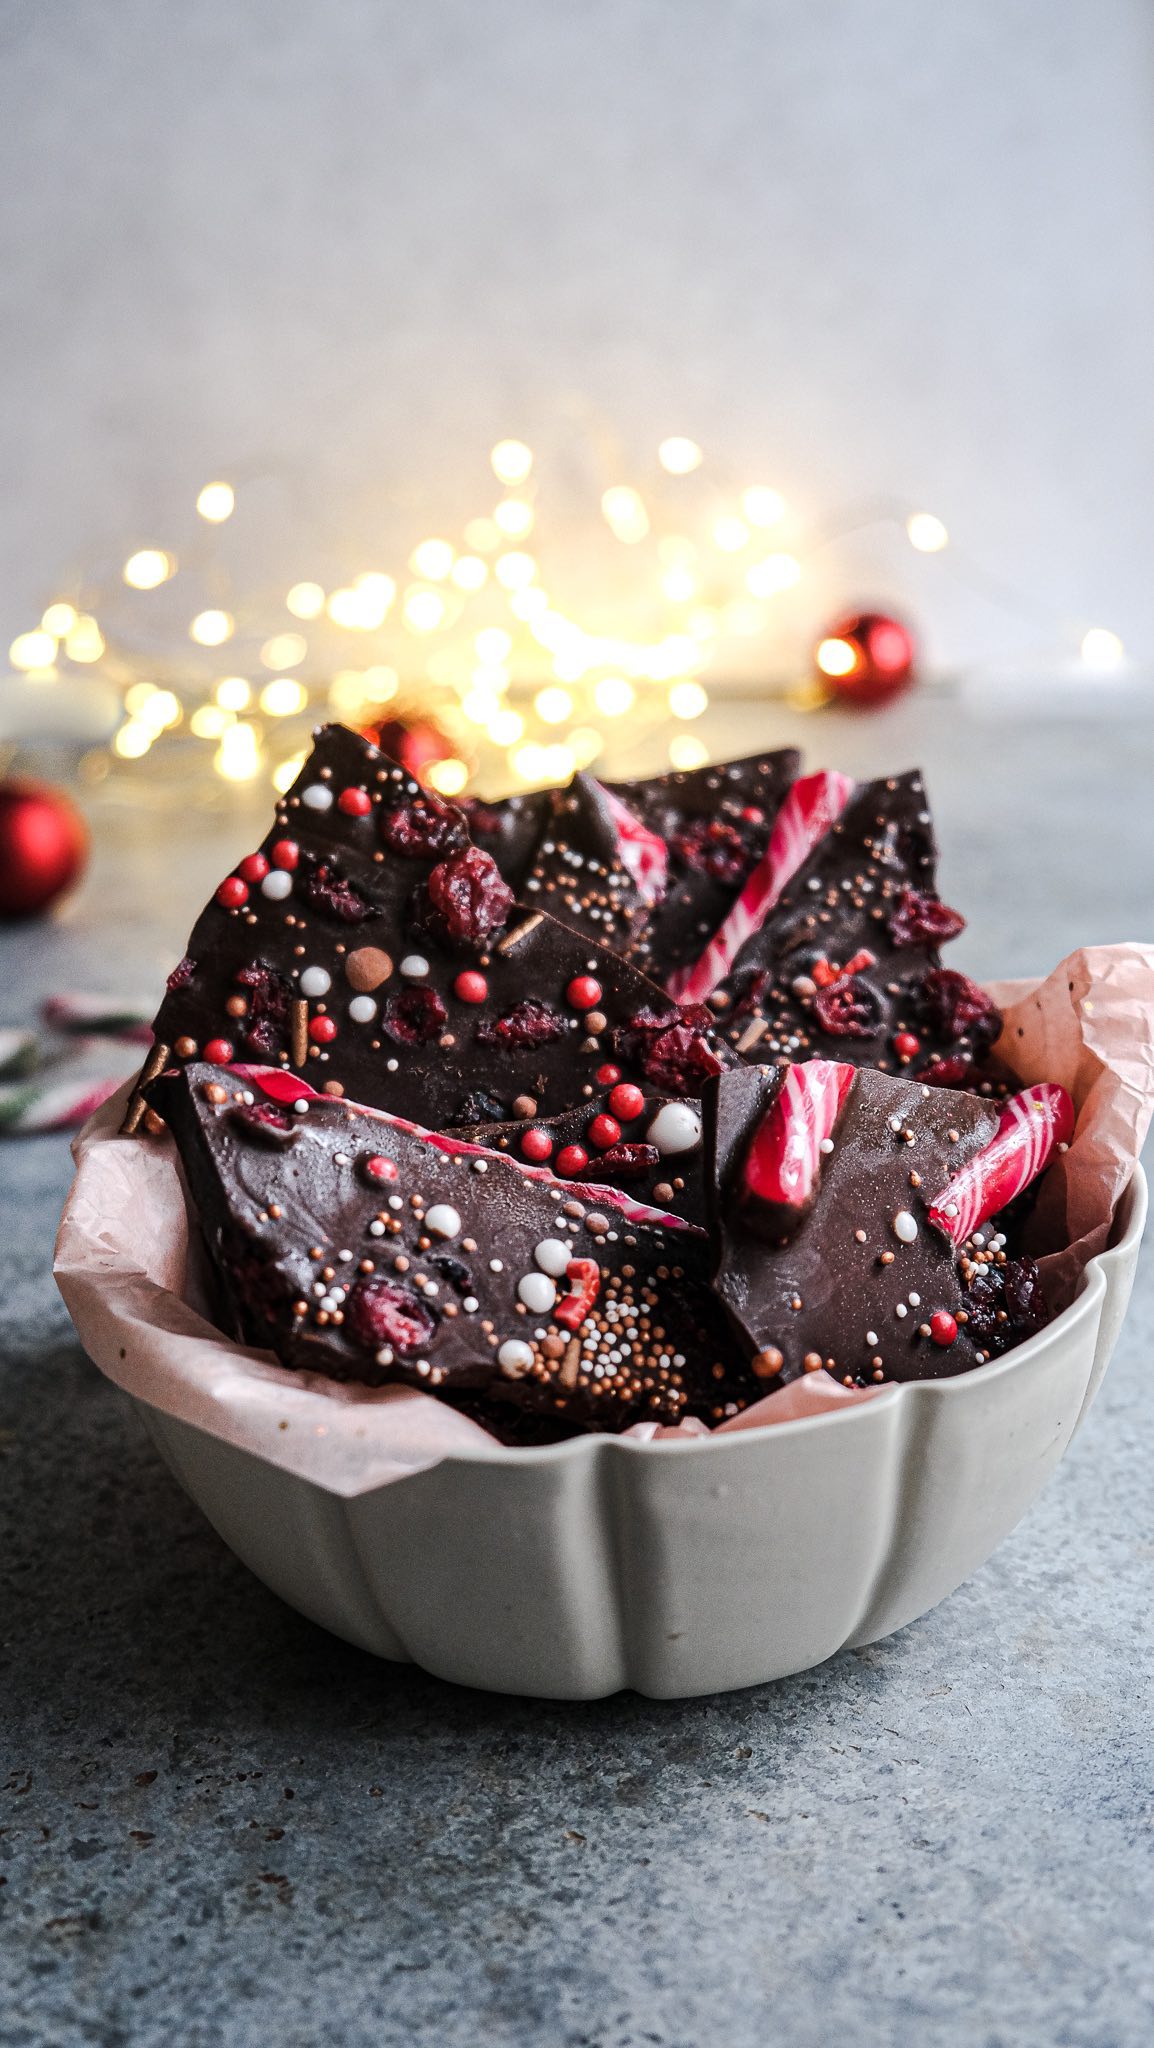 Chocolate bar ! Un cadeau gourmand à offrir hyper facile à réaliser ! Il vous faudra juste 6 plaquettes de chocolat noir pâtissier et de quoi le garnir. Ici j’ai choisi des cranberries, des perles de sucres de Noël et des cannes à sucre. Mais les variations sont infinies avec les fruits secs, les bonbons etc… il ne reste plus qu’à joliment les emballer et cela permet de faire un joli cadeau DIY 😉
•
•
•
•
•
#dessert #chocolate #baking #tutorial #homemade #gift #diy #cooking #present #yum #homecooking #foodgasm #foodpics #tasty #giftideas #foodpic #doityourself #feedfeed #onthetable #foodphotography #gifts #christmas #chocolatebar